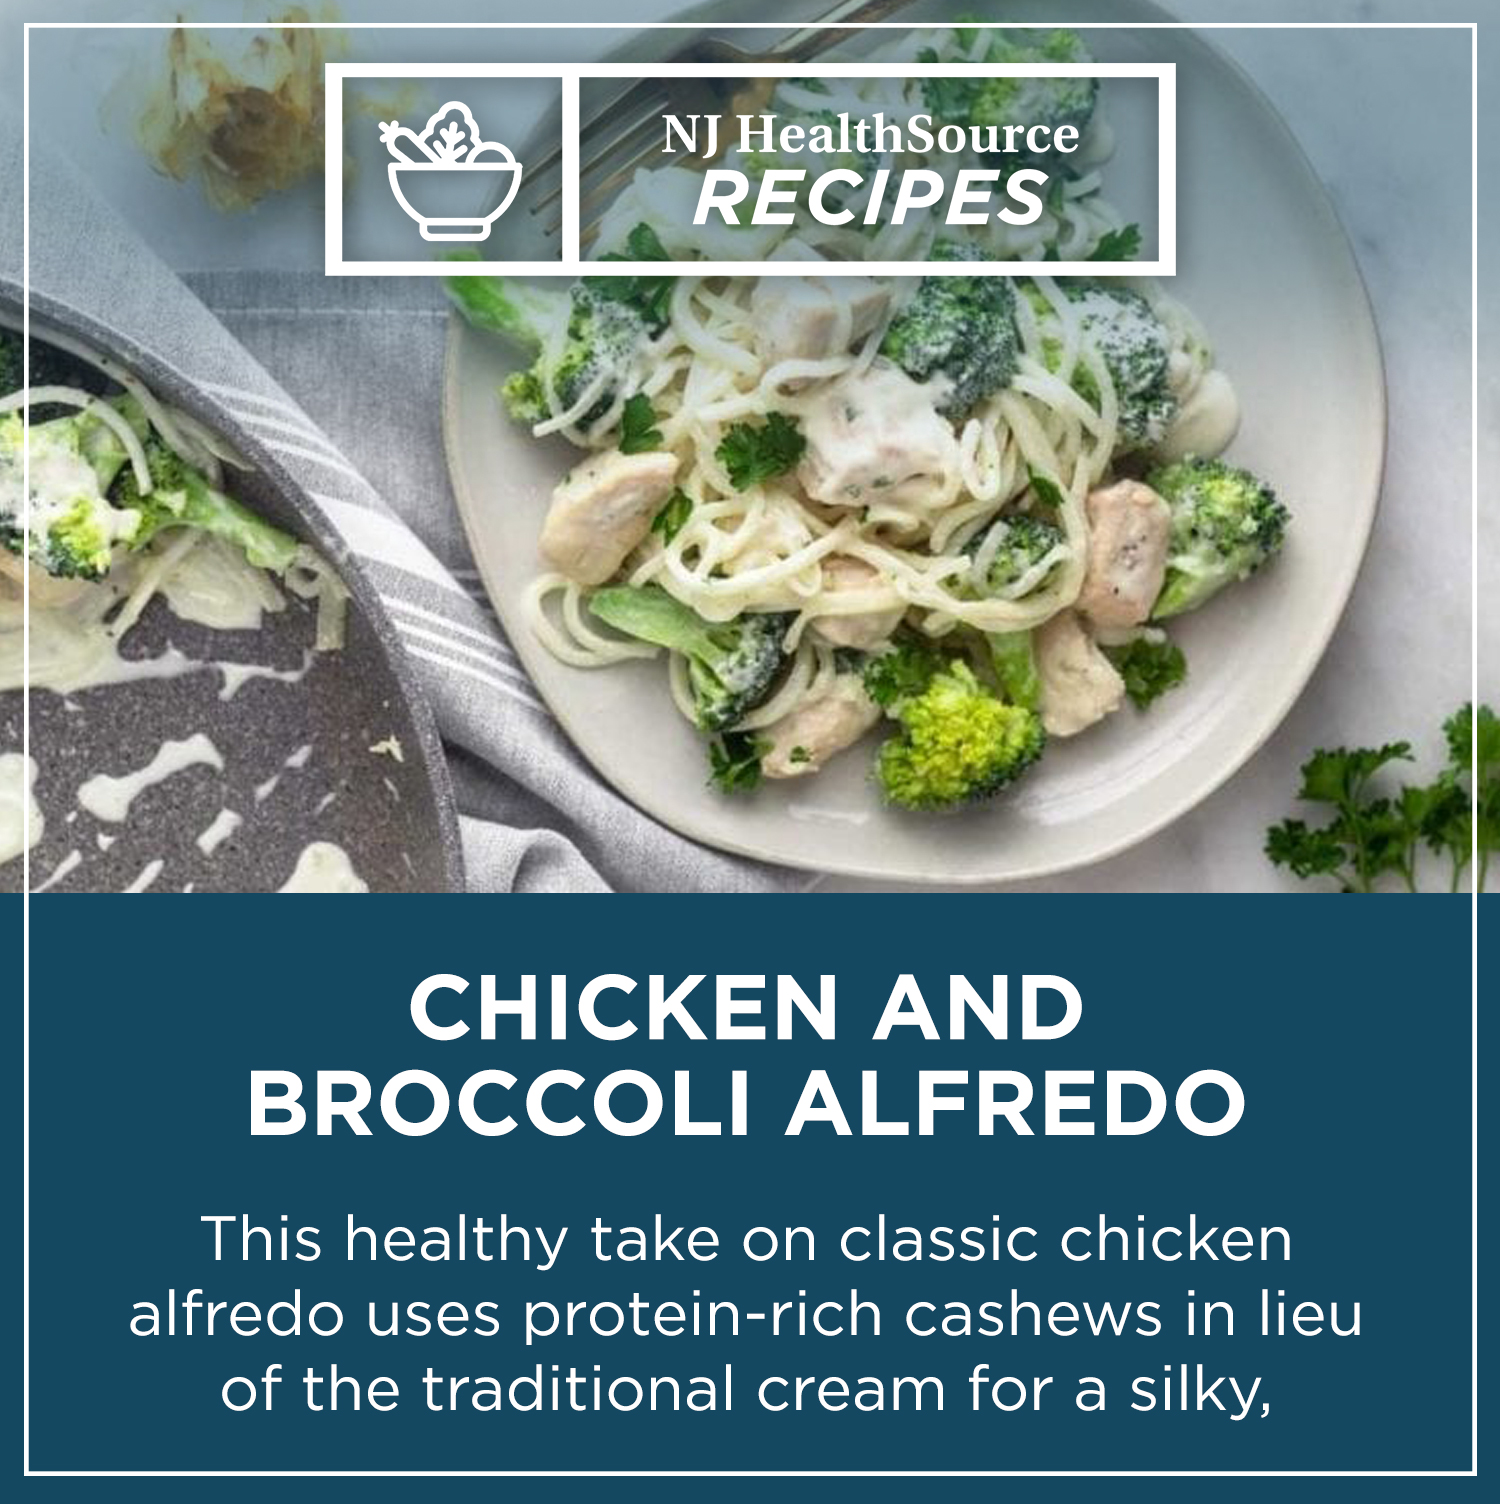 002814 Averista NJHS Recipe Post Chicken Broccoli Alfredo